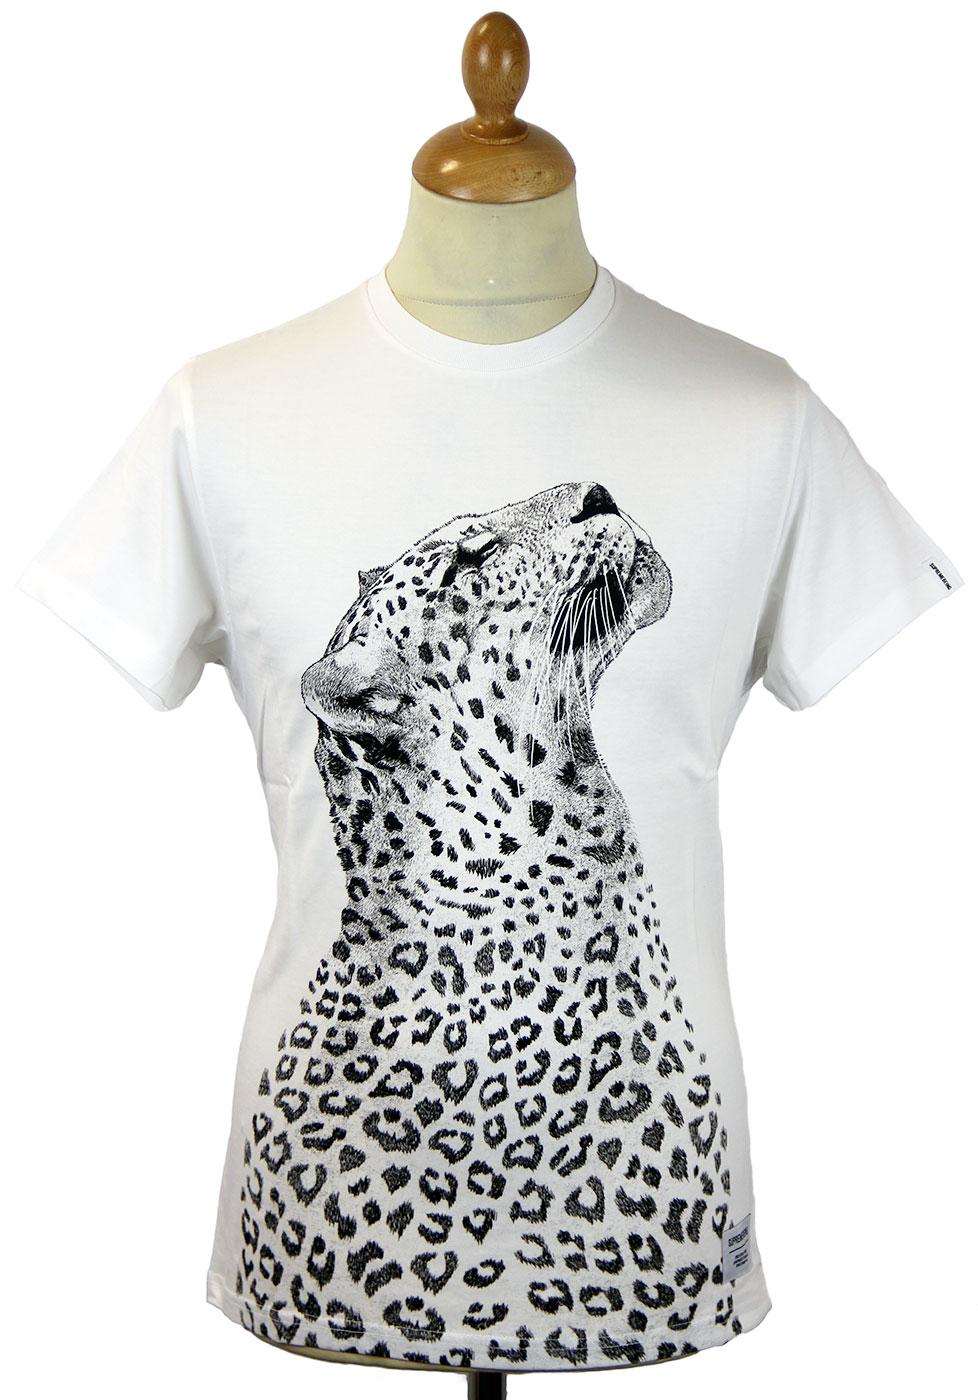 SUPREMEBEING Liupaard Retro Indie Leopard Print T-Shirt